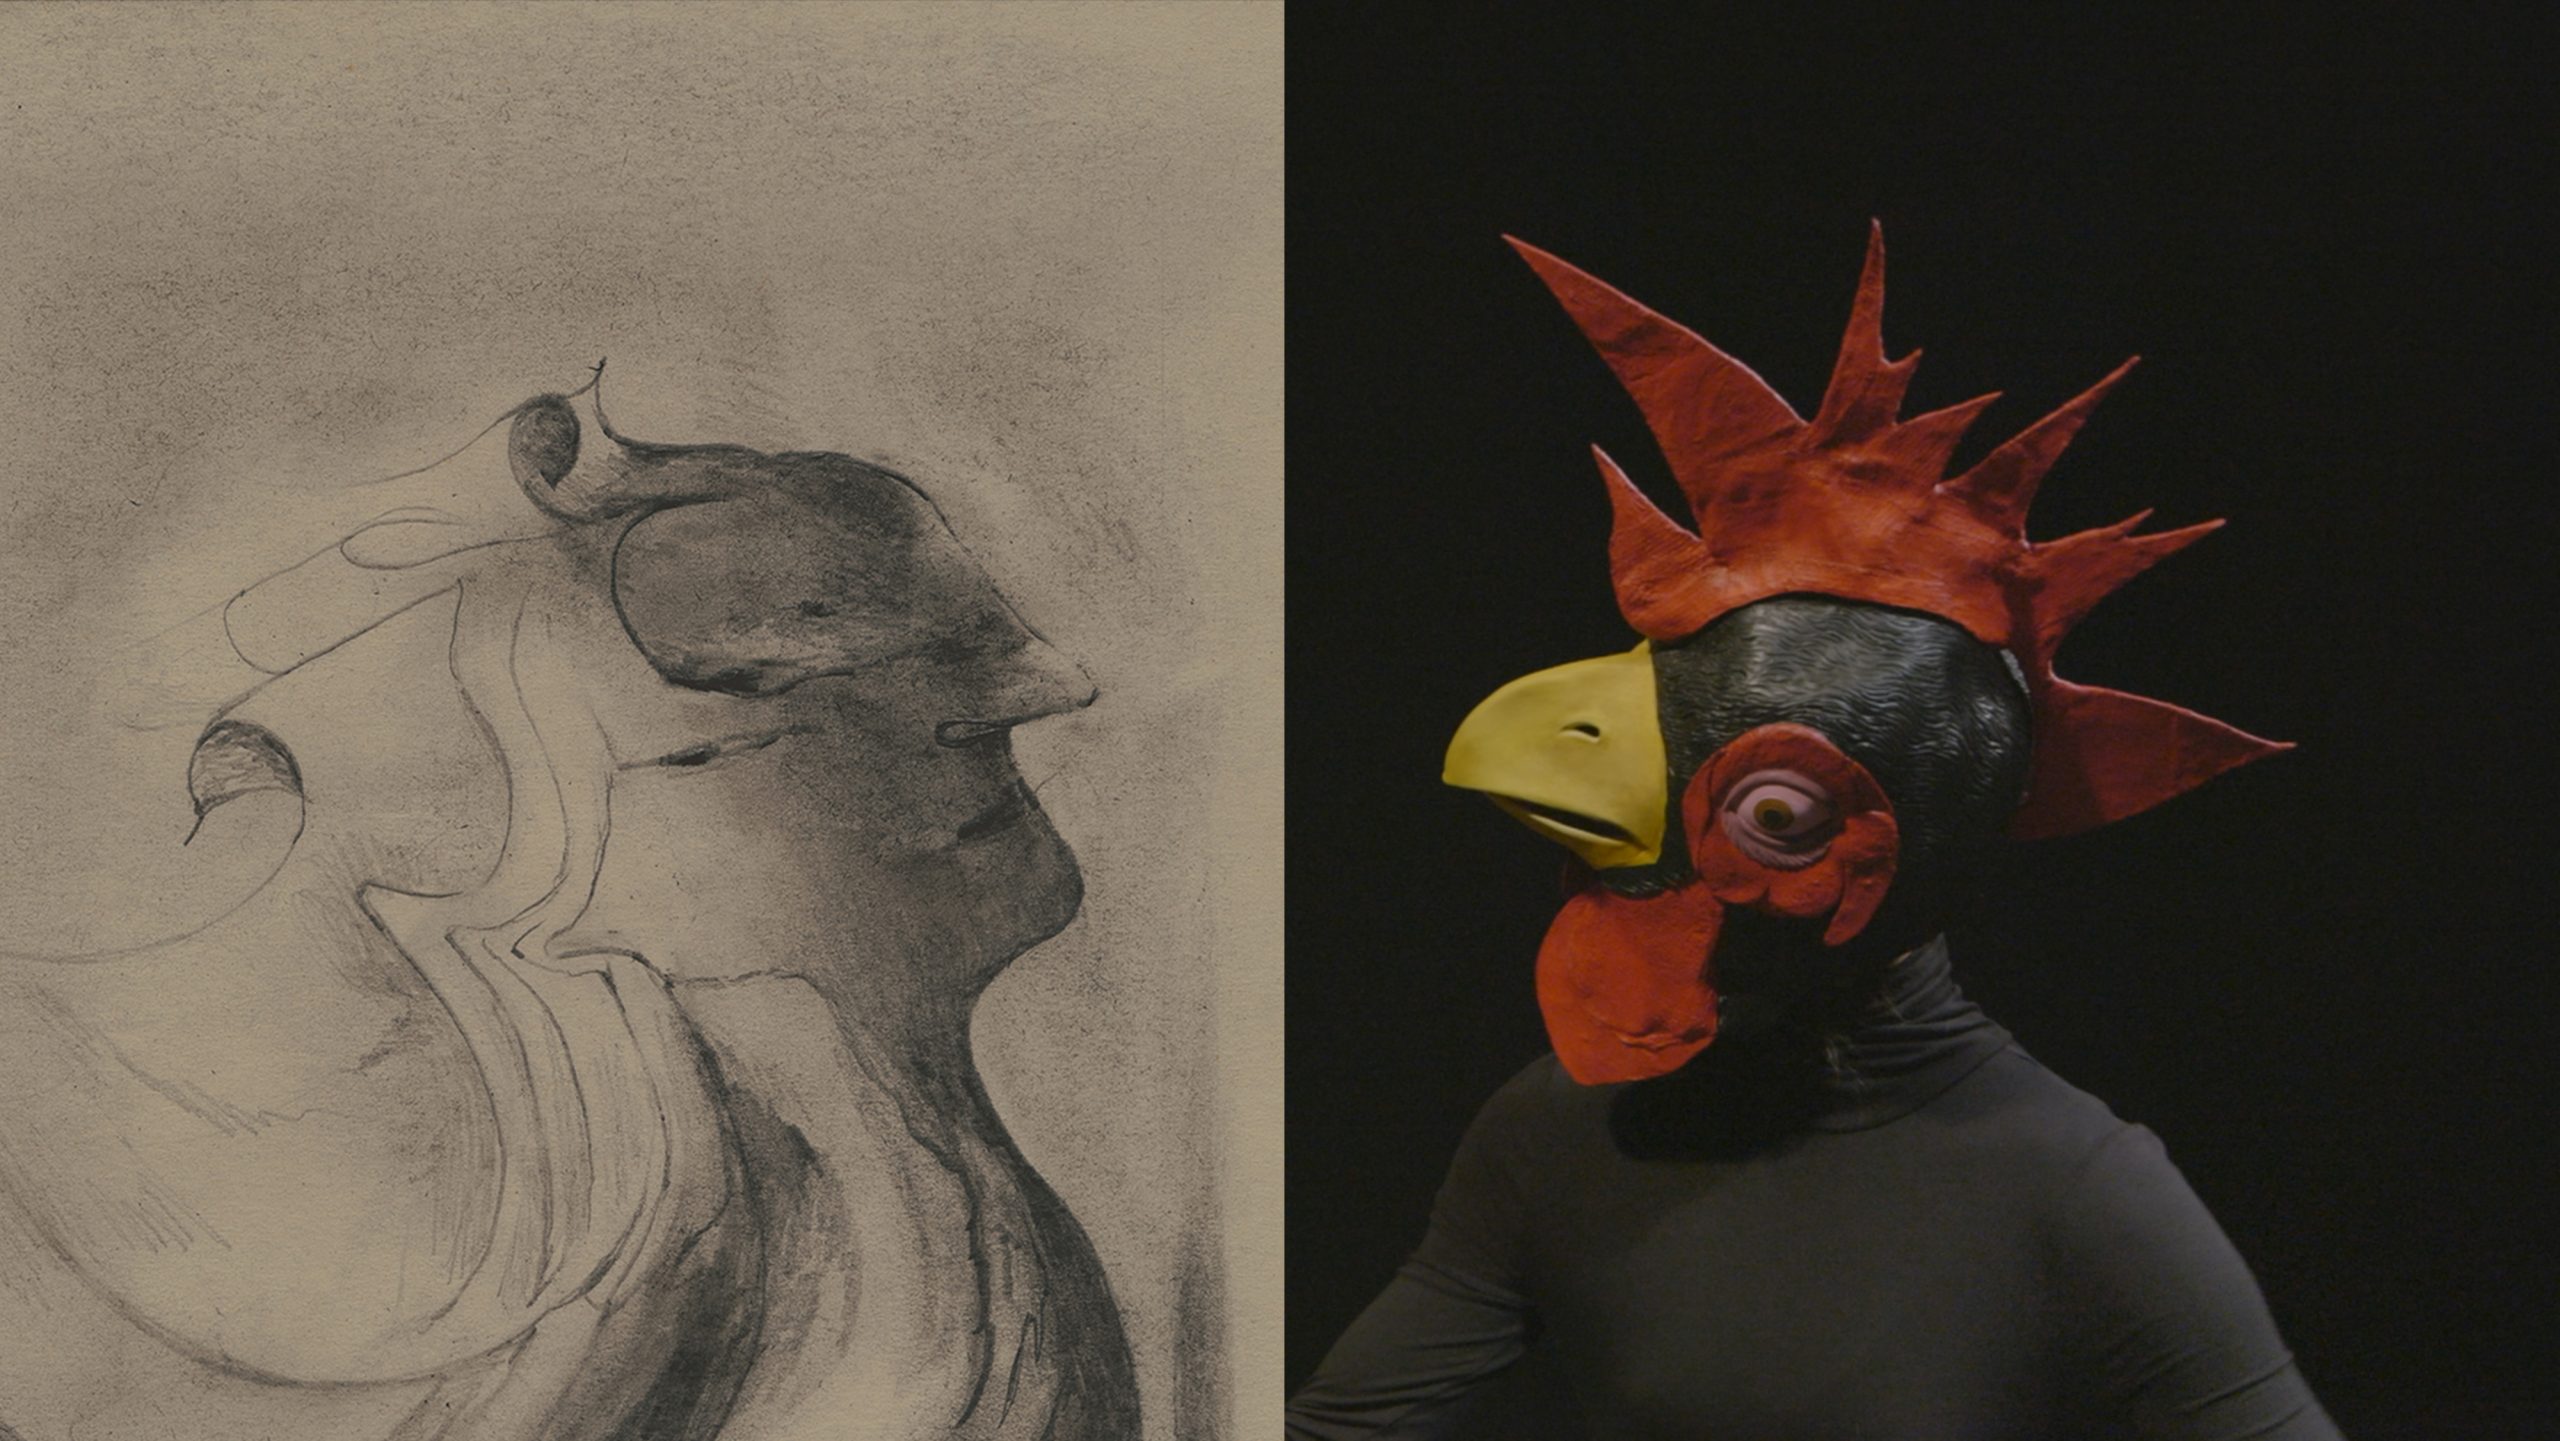 Links die Zeichnung einer menschenähnlichen Gestalt, rechts Die Maske eines Hahns vor einem schwarzen Hintergrund